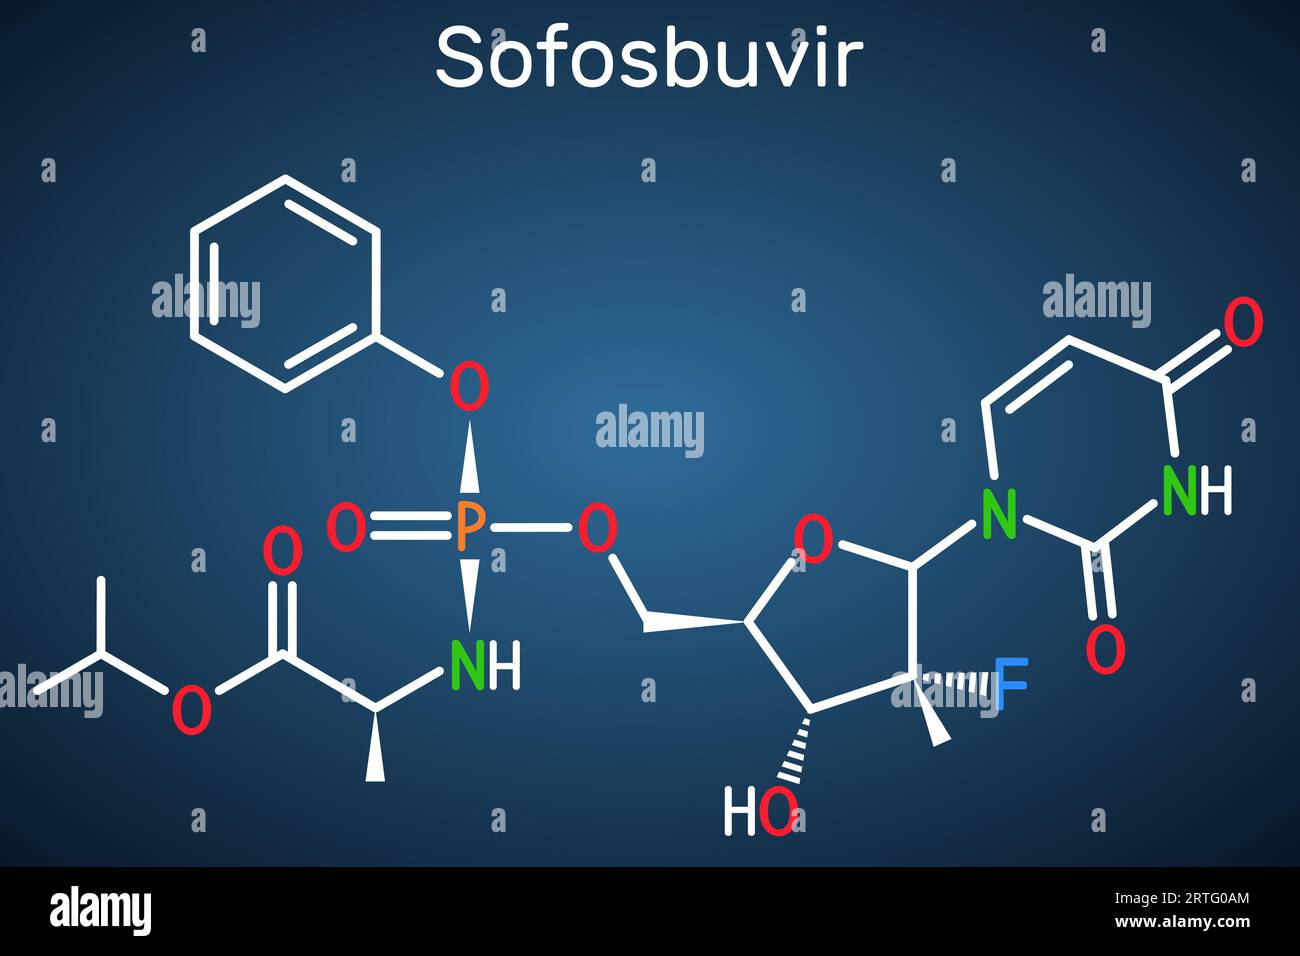 Sofosbuvir-Molekül. Es ist ein antivirales Medikament, das zur Behandlung von Hepatitis-C-Viren und HCV-Infektionen verwendet wird. Strukturelle chemische Formel auf dunkelblauem Hintergrund. Stock Vektor